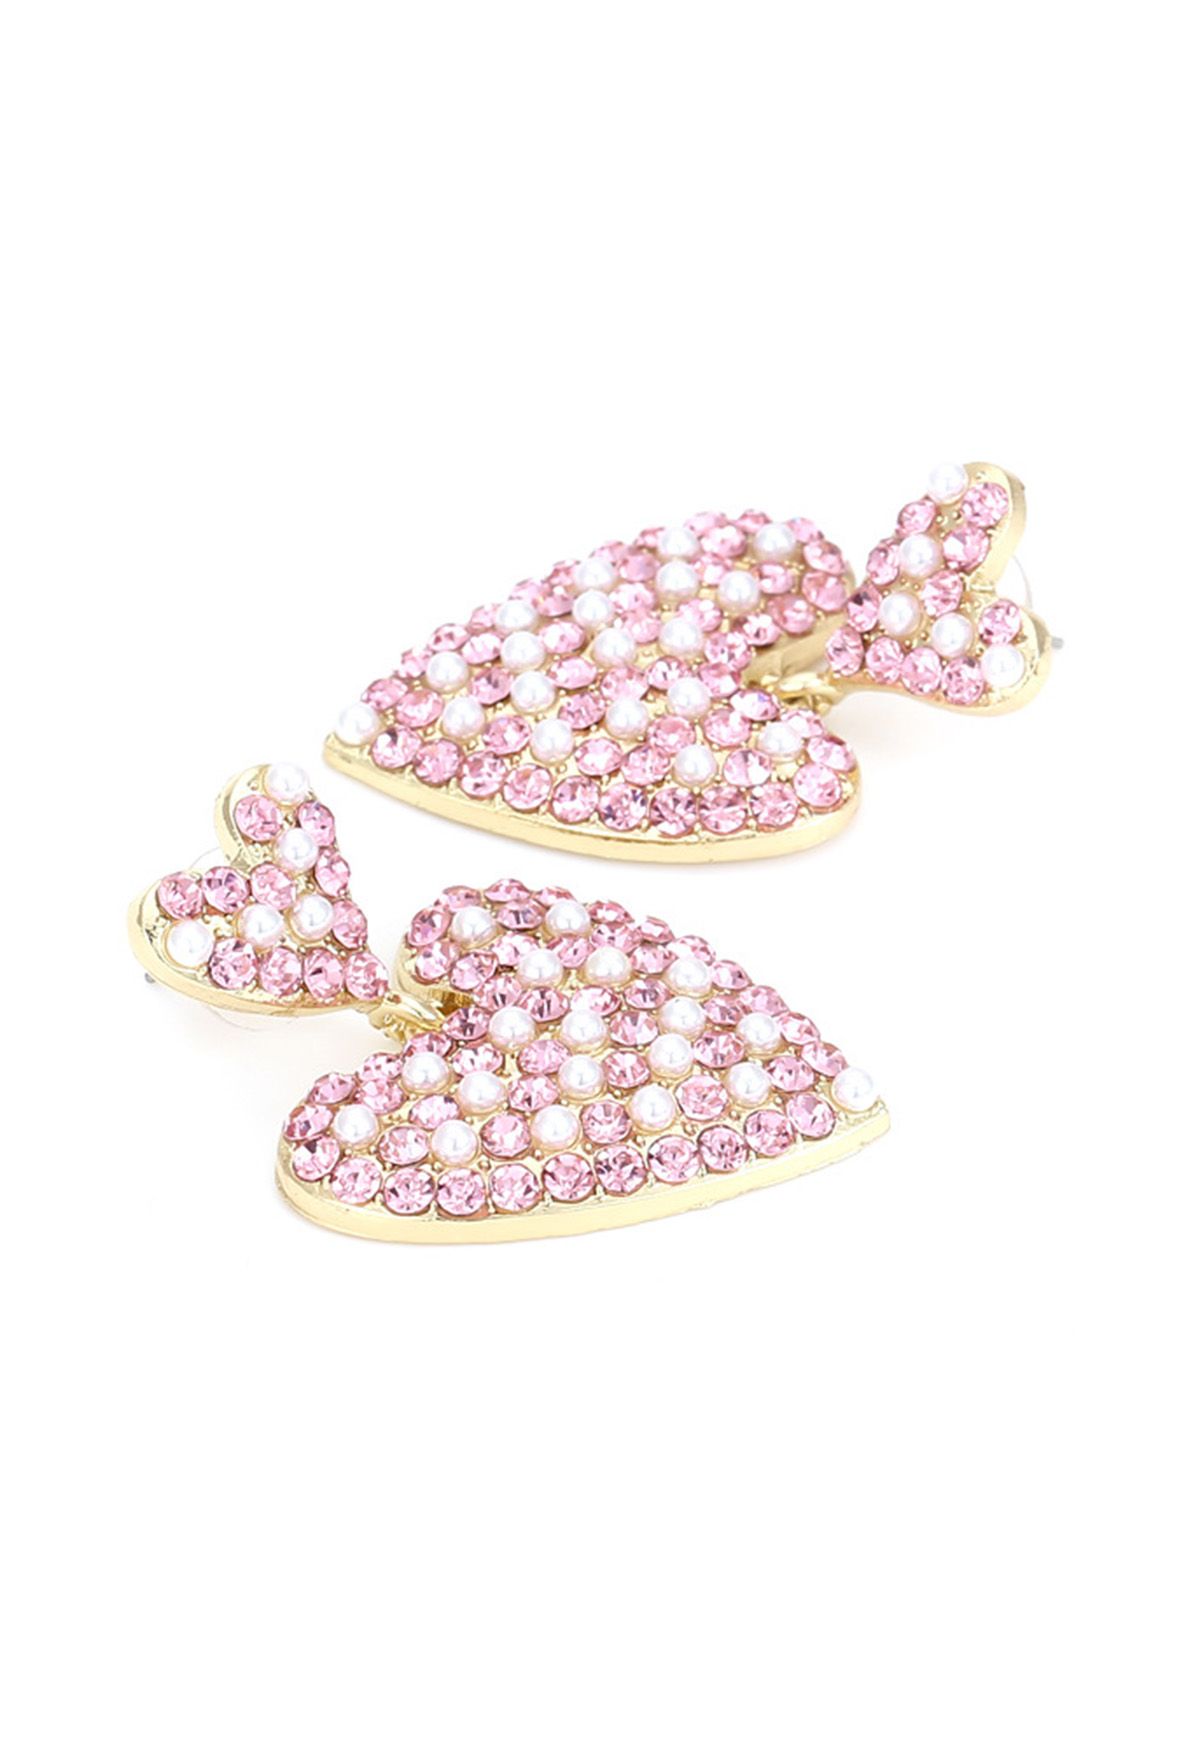 Preciosos pendientes de diamantes de imitación con forma de corazón de perlas